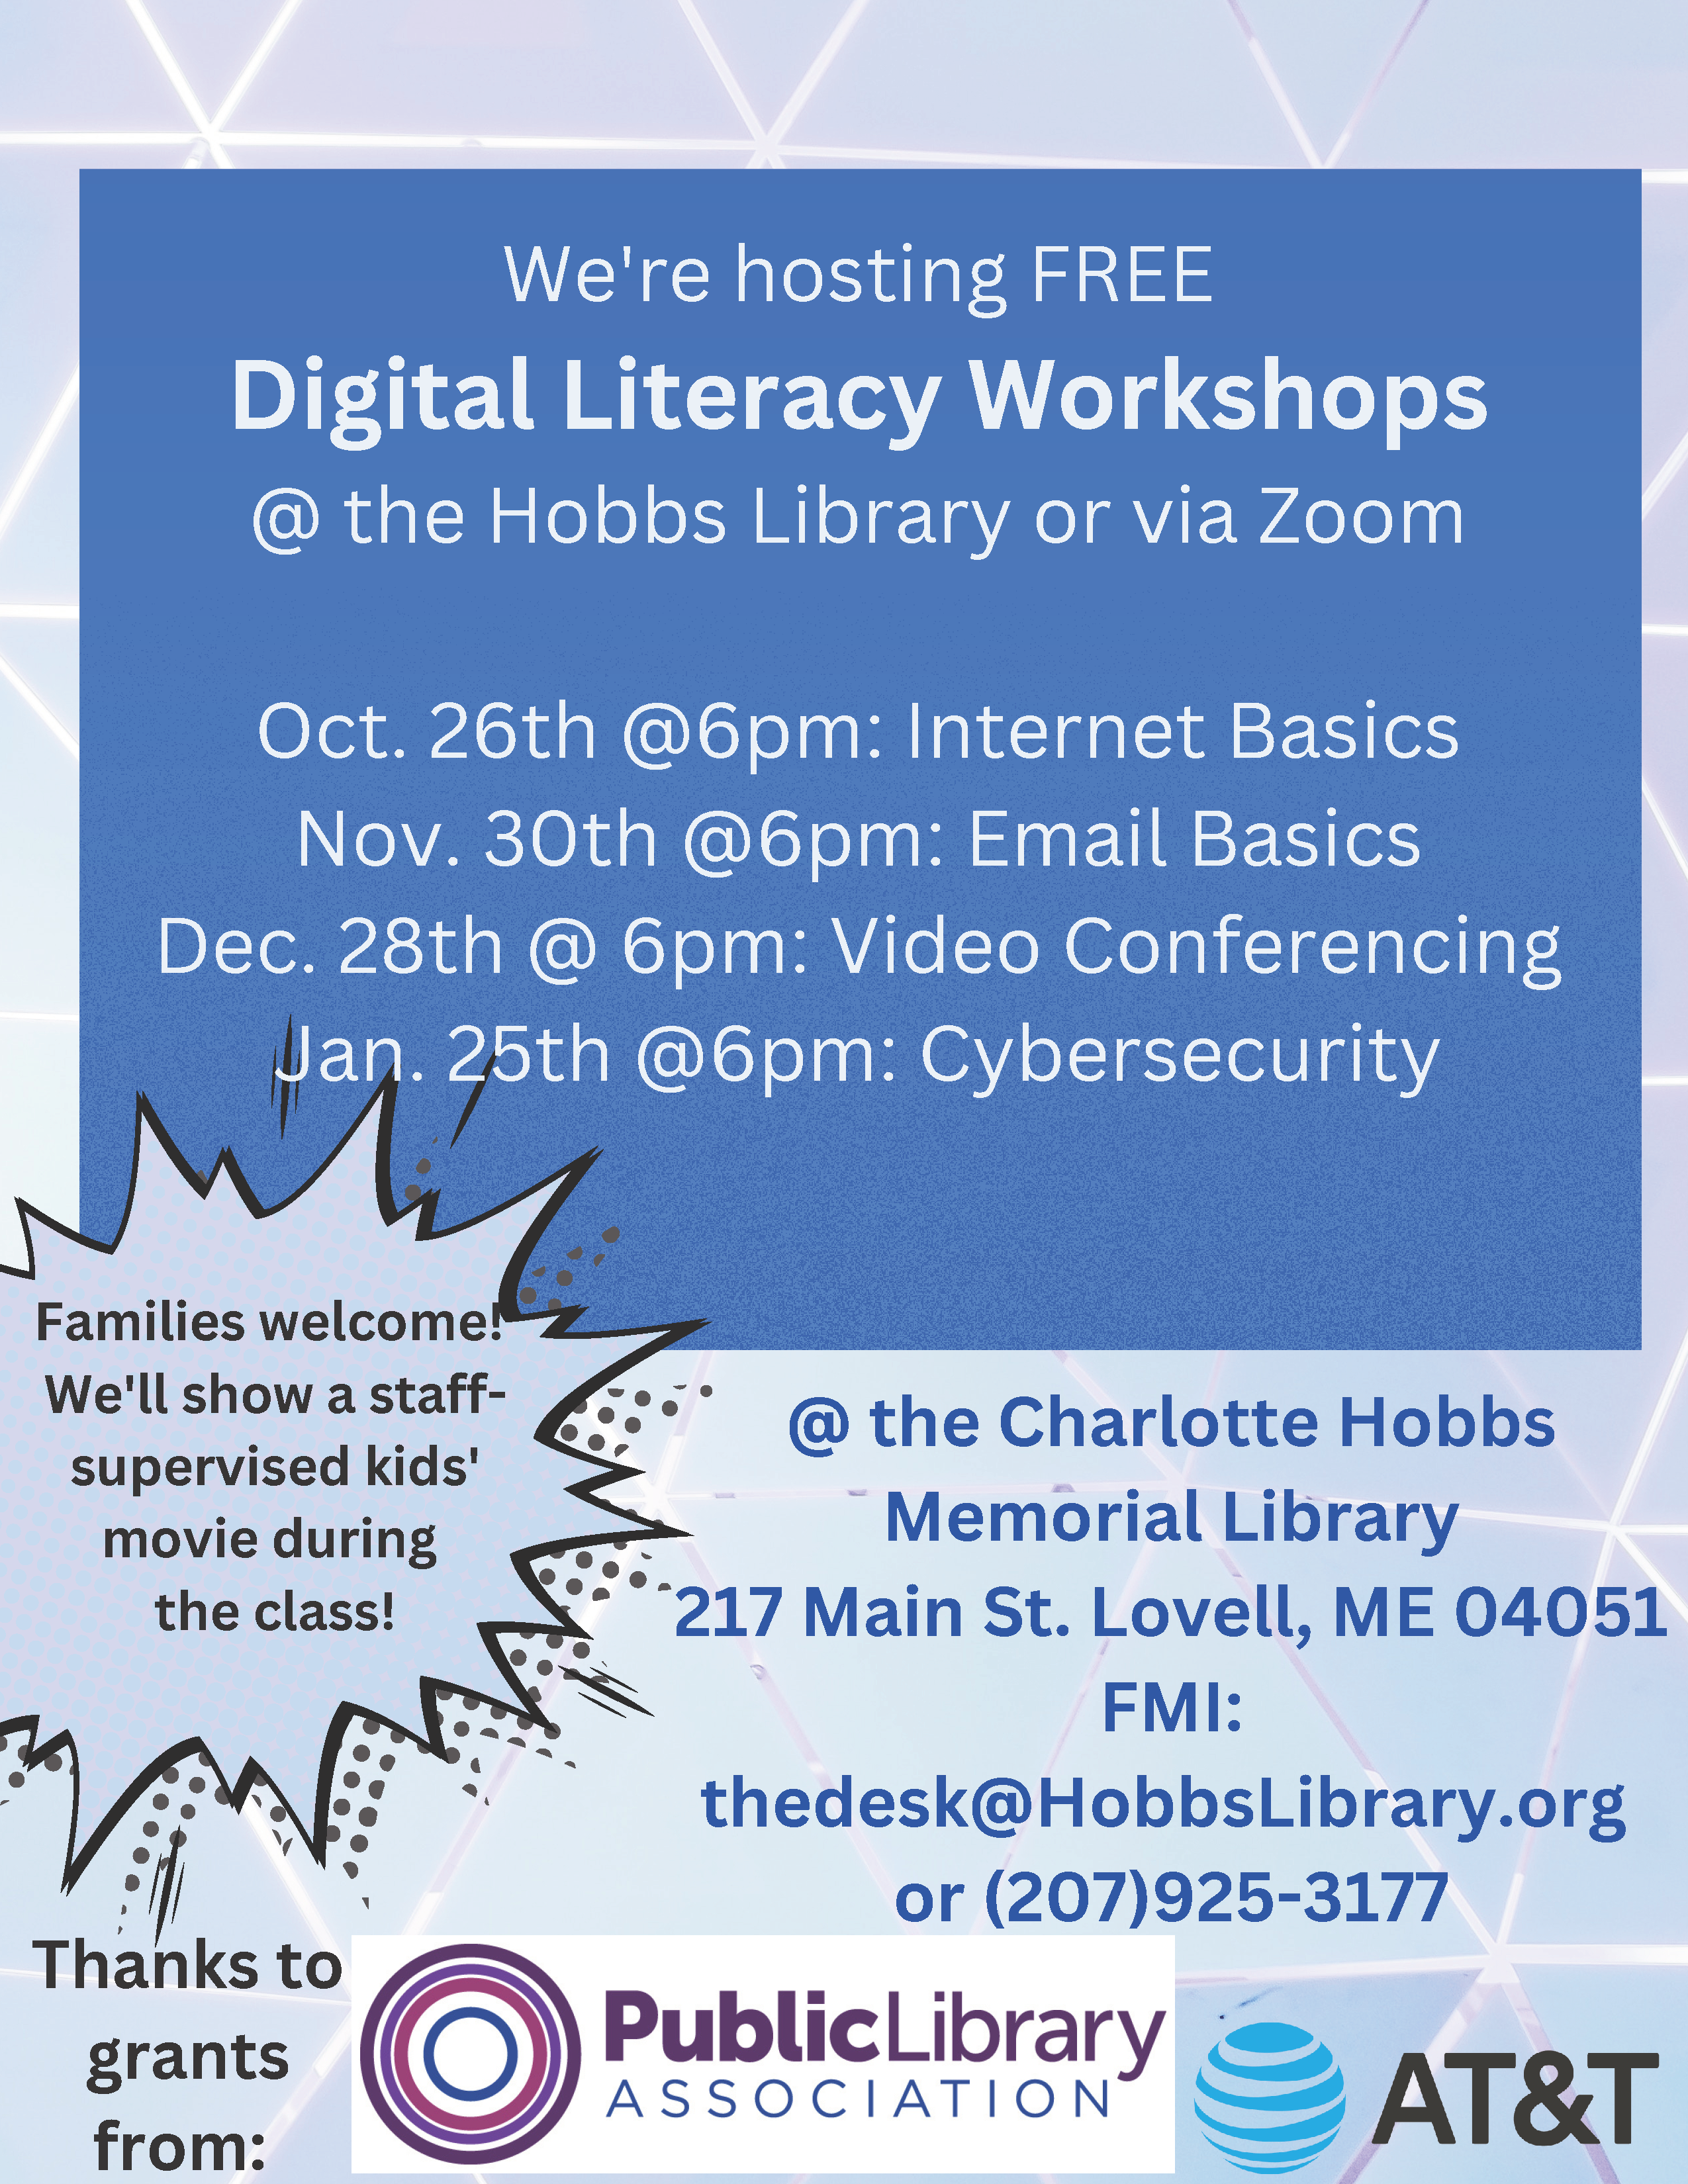 We're hosting FREE Digital Literacy Workshops @ the Hobbs Library or via Zoom